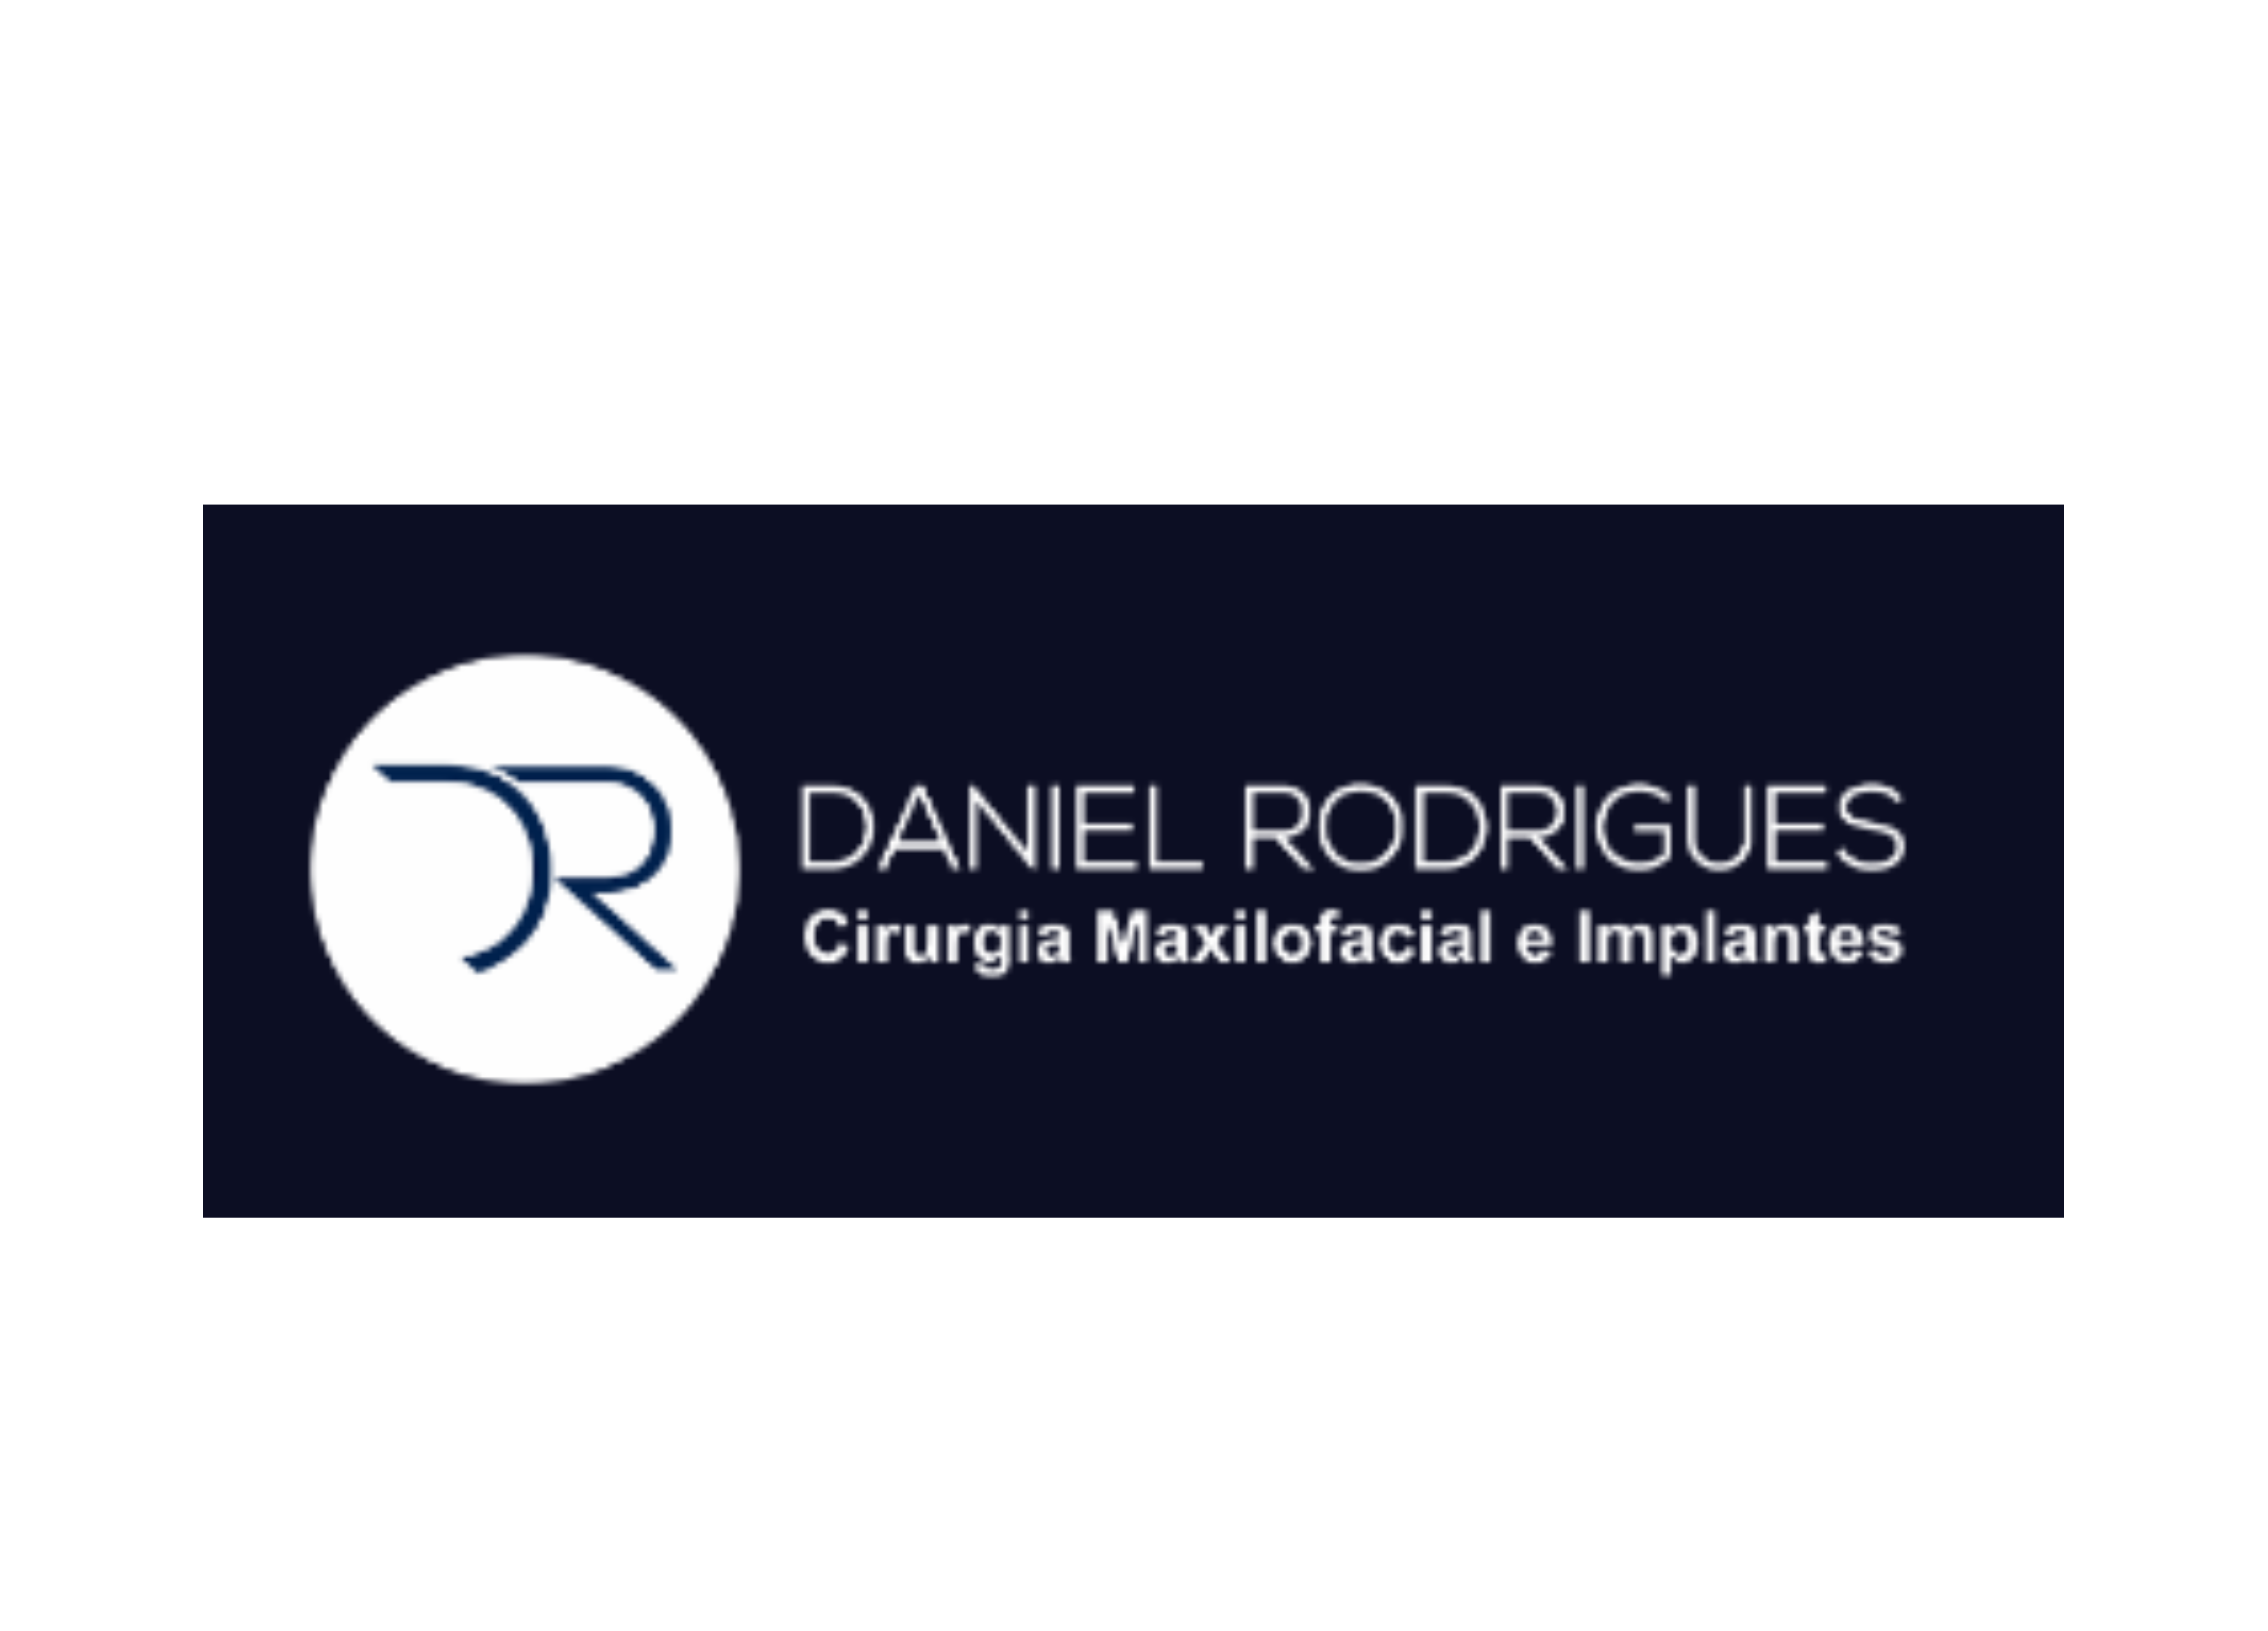 Dr. Daniel Rodrigues